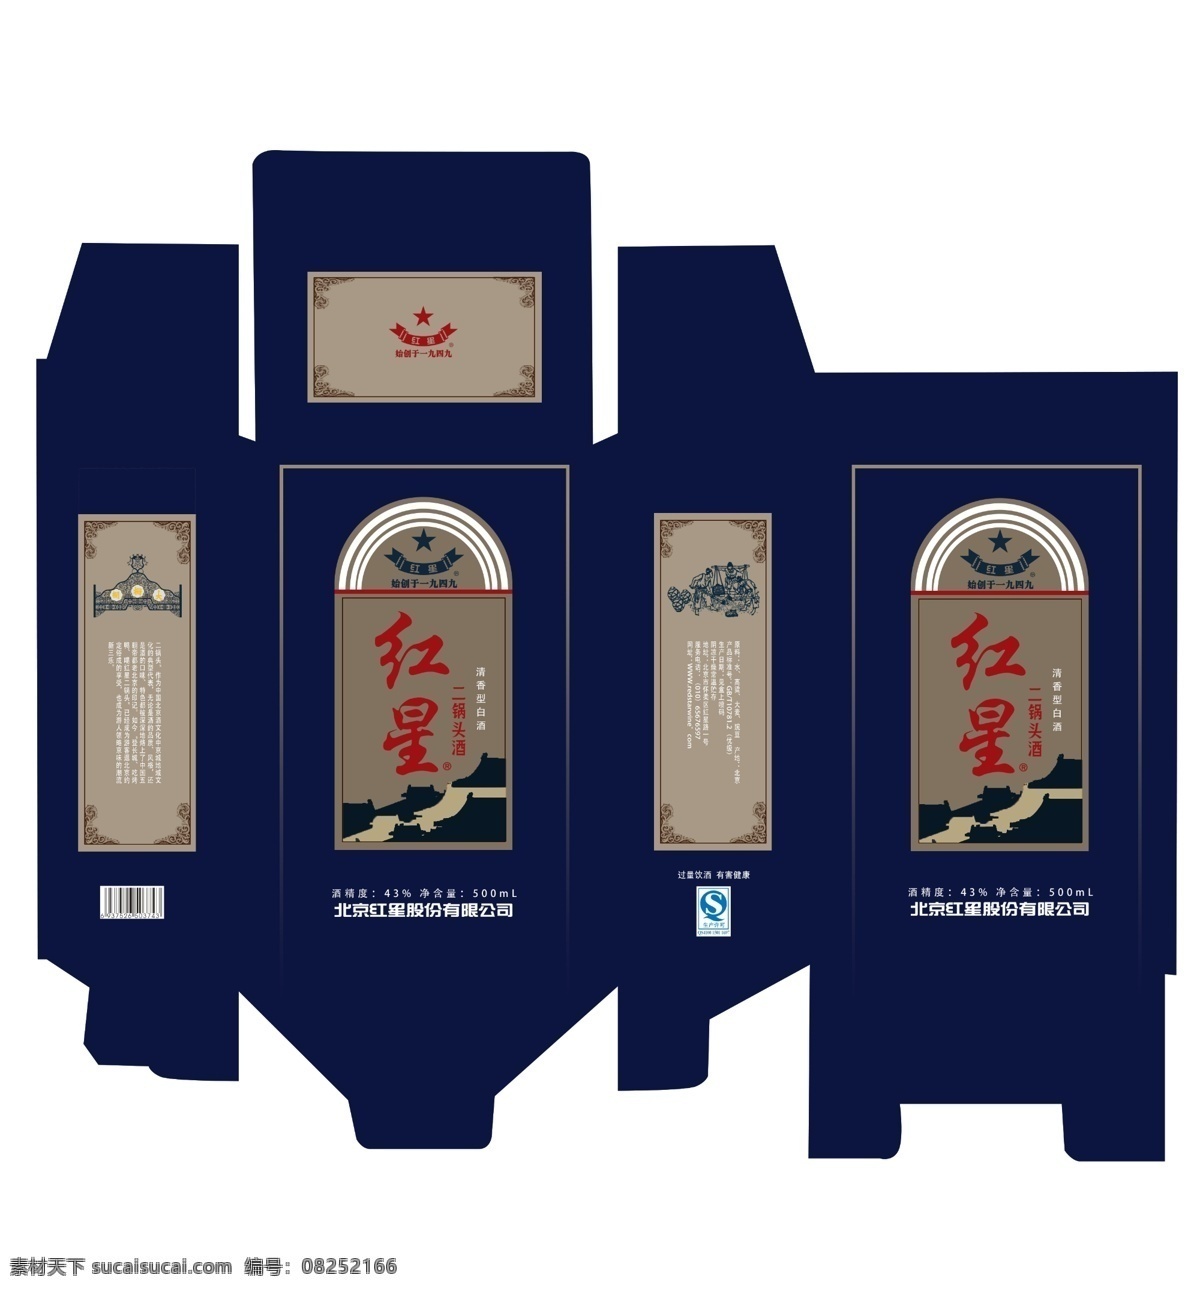 红星 酒瓶 外包装 外包装设计 红星二锅头 中国蓝 创意设计 白色